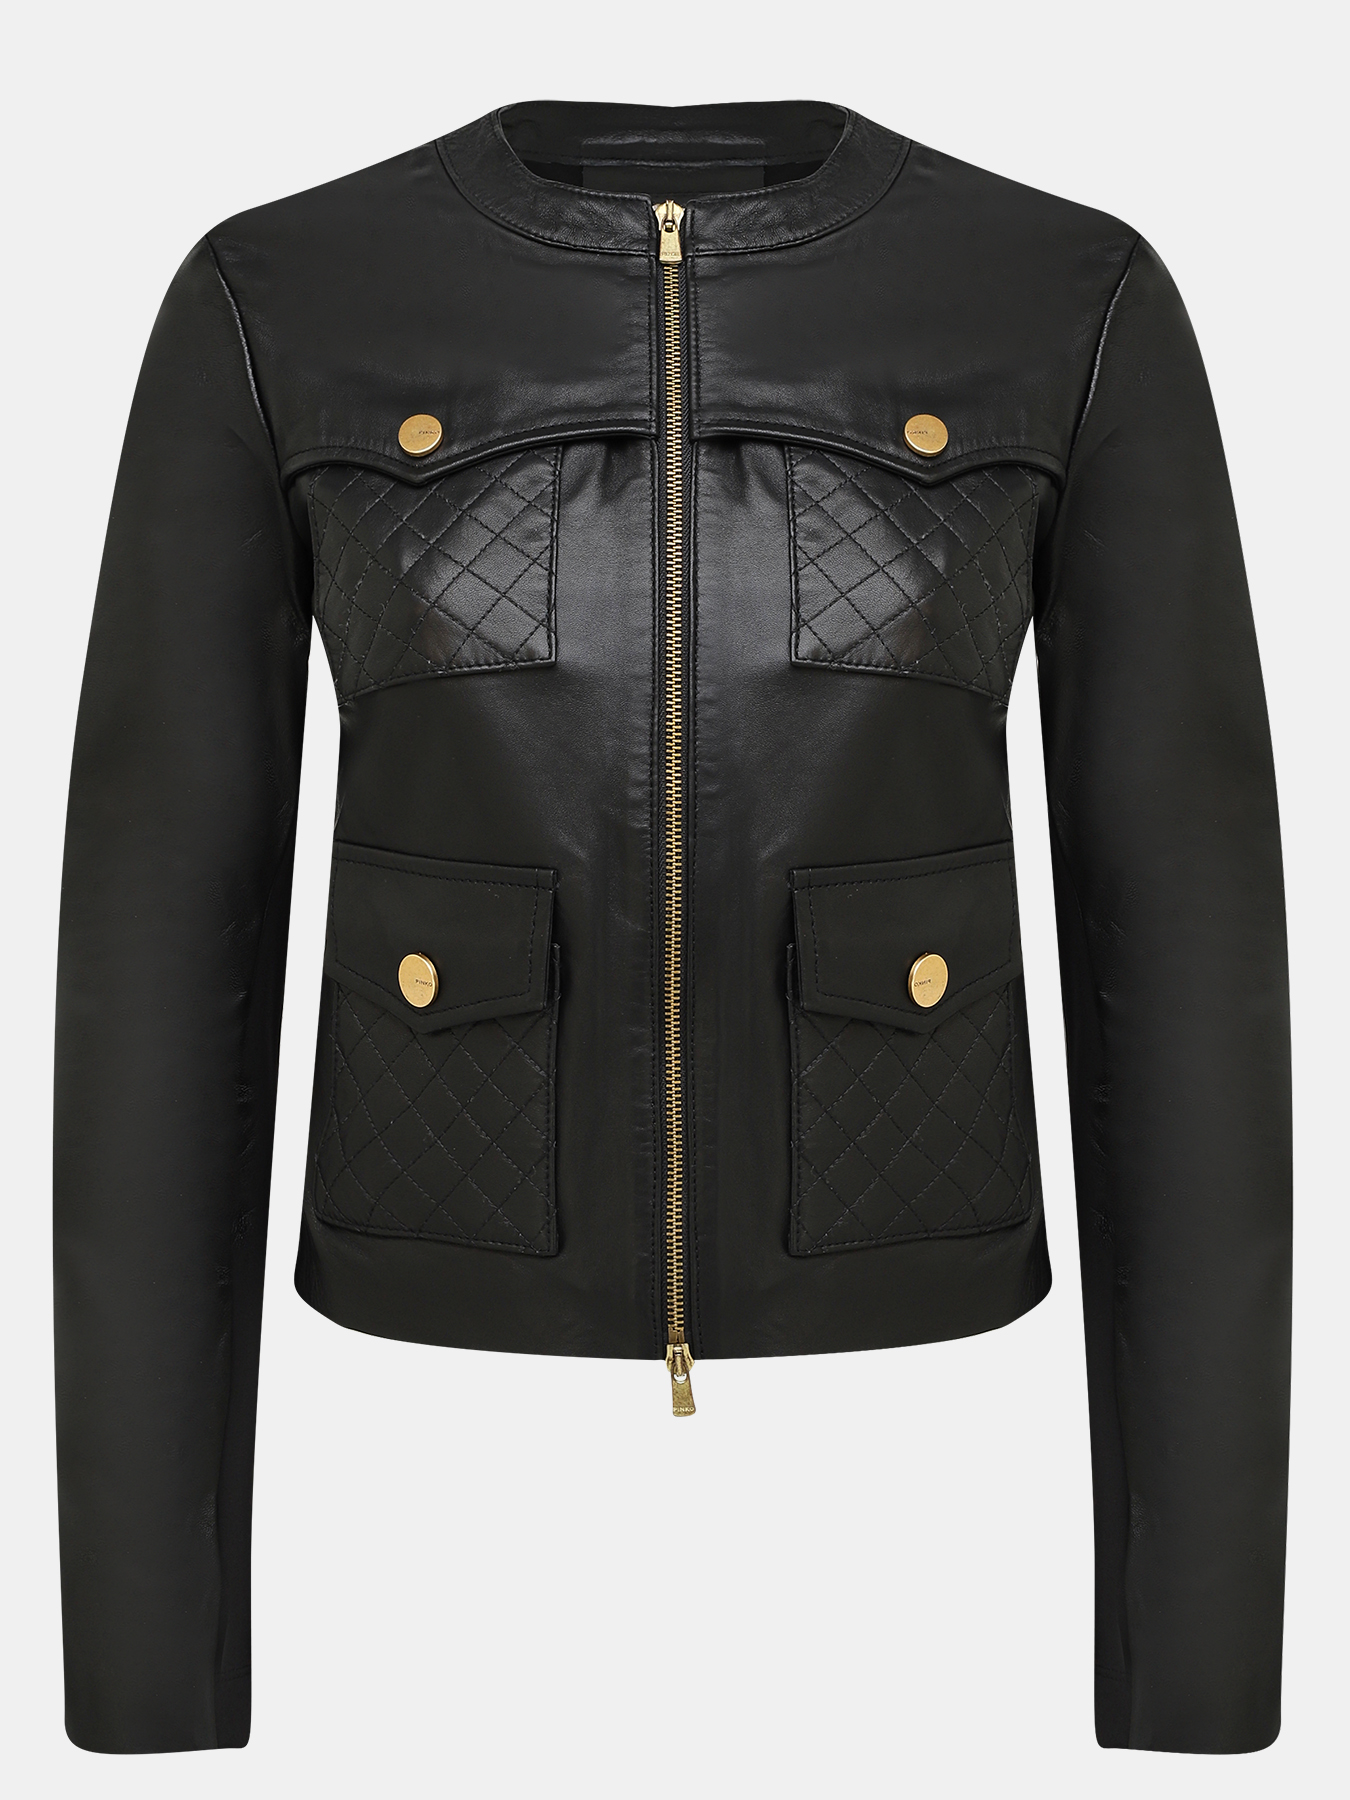 Кожаная куртка Pinko 384931-020, цвет черный, размер 40